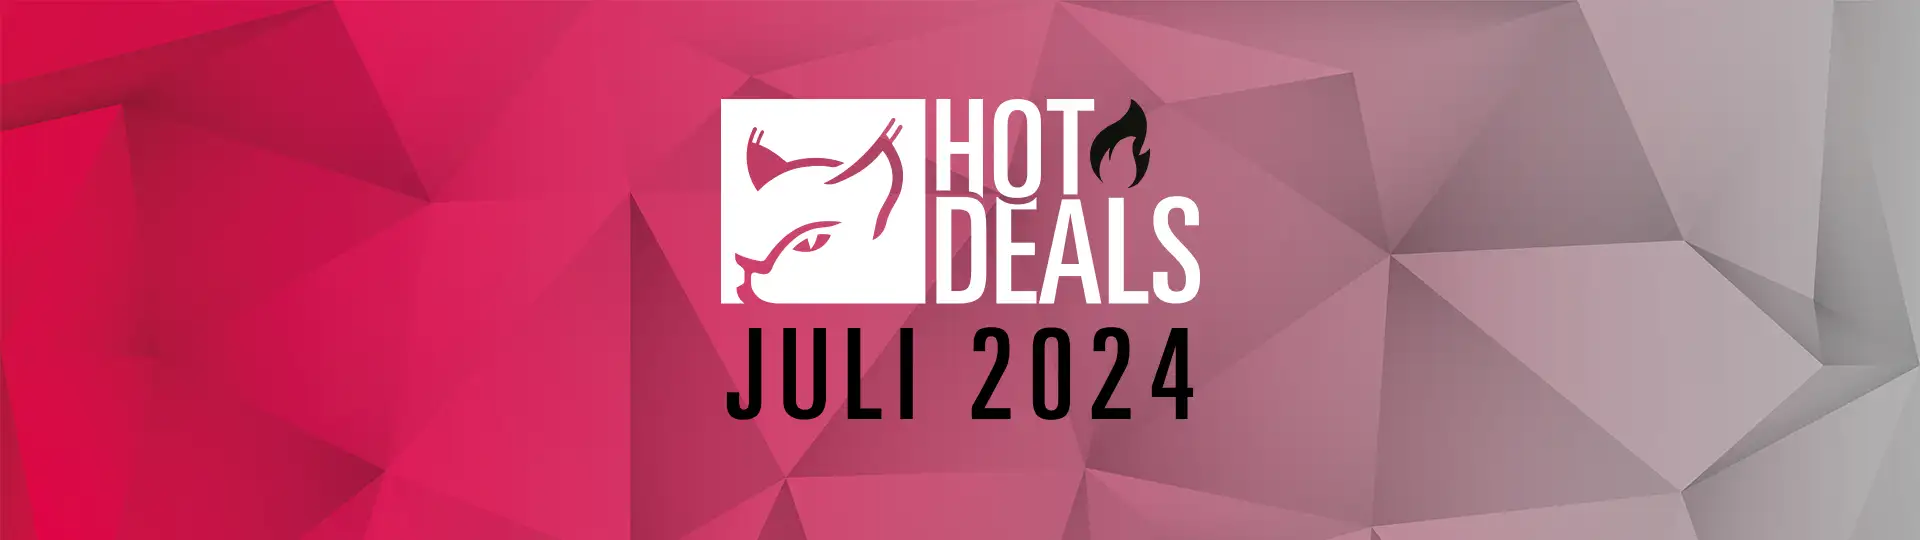 Hot Deals Juli 2024 Banner